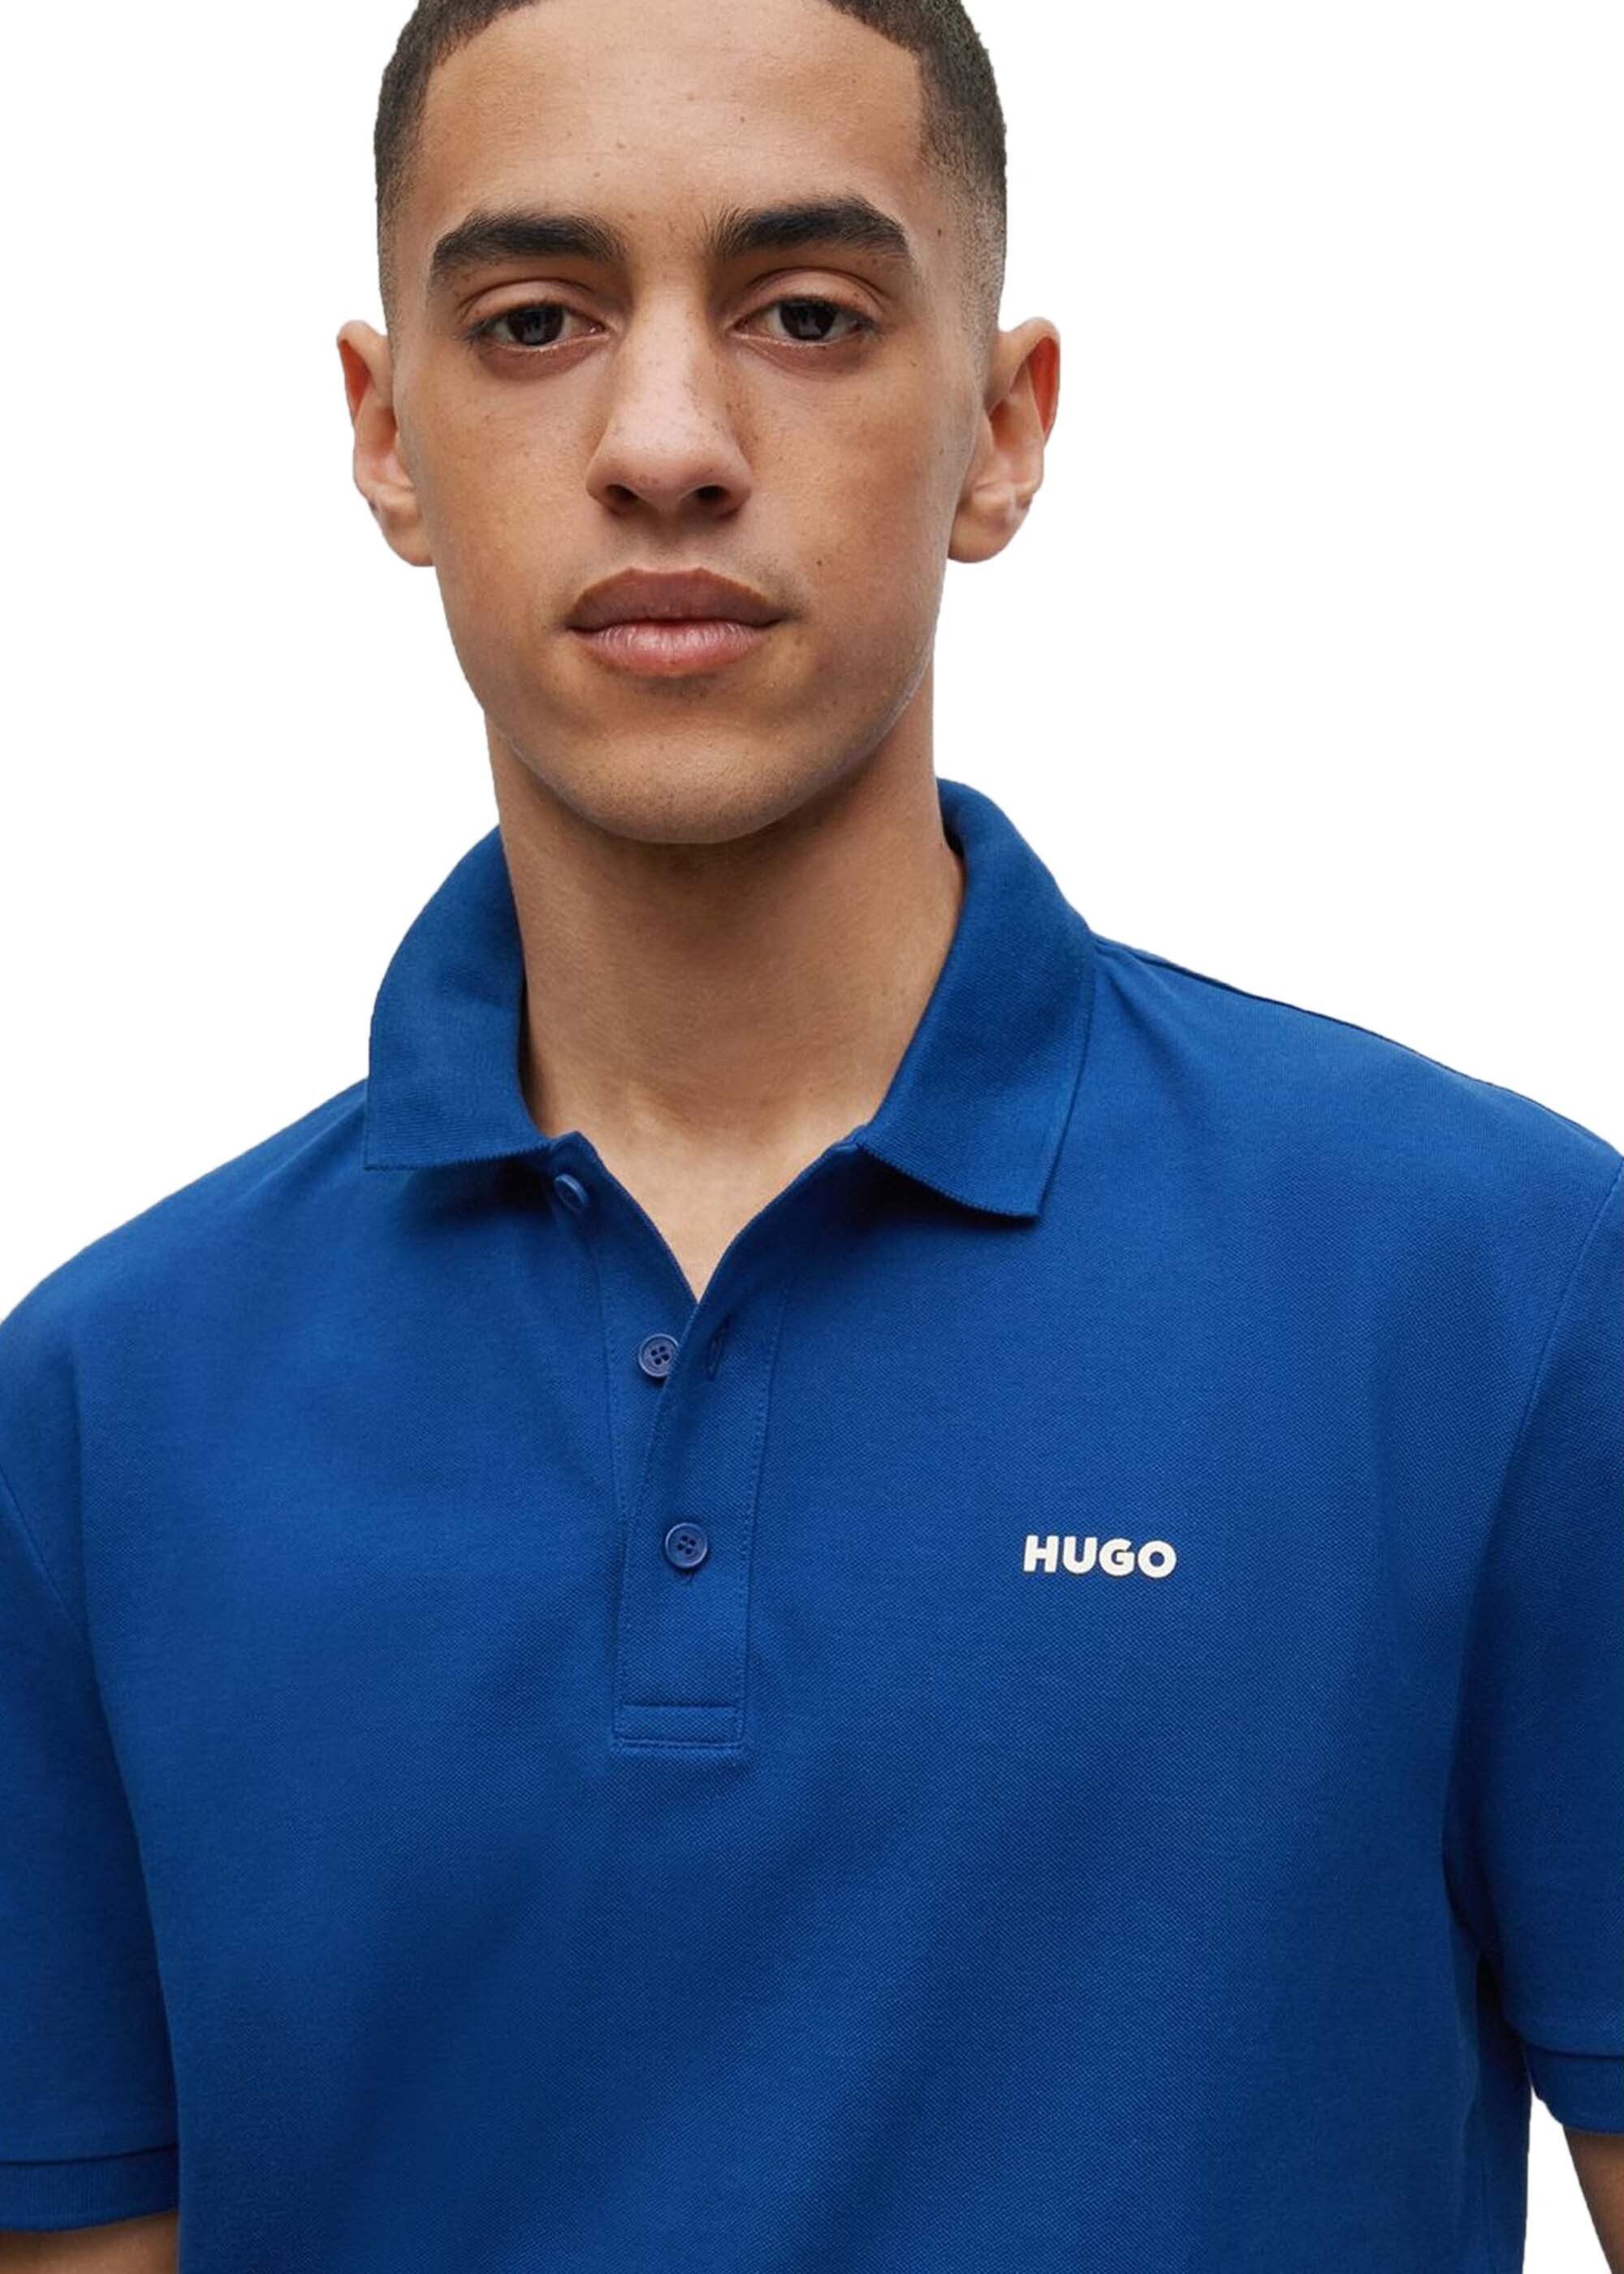 Blau (Navy) - Polo-Shirt DONOS222, HUGO Poloshirt Pique, 1/2-Arm Herren